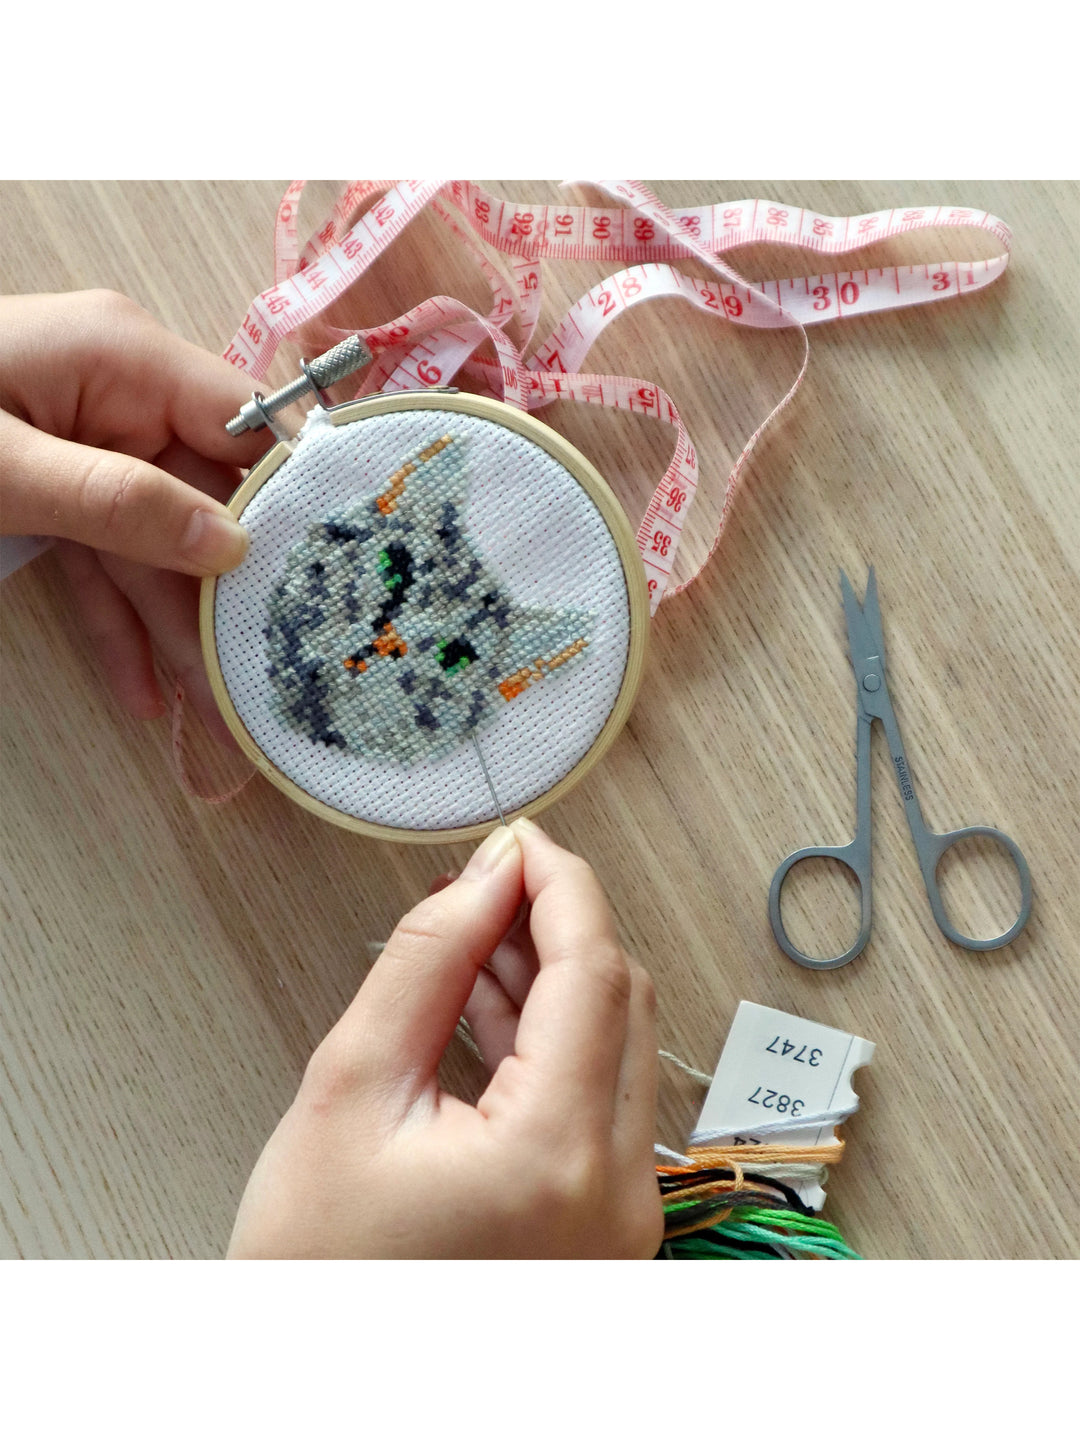 Kikkerland Mini Cross Stitch Embroidery Kit